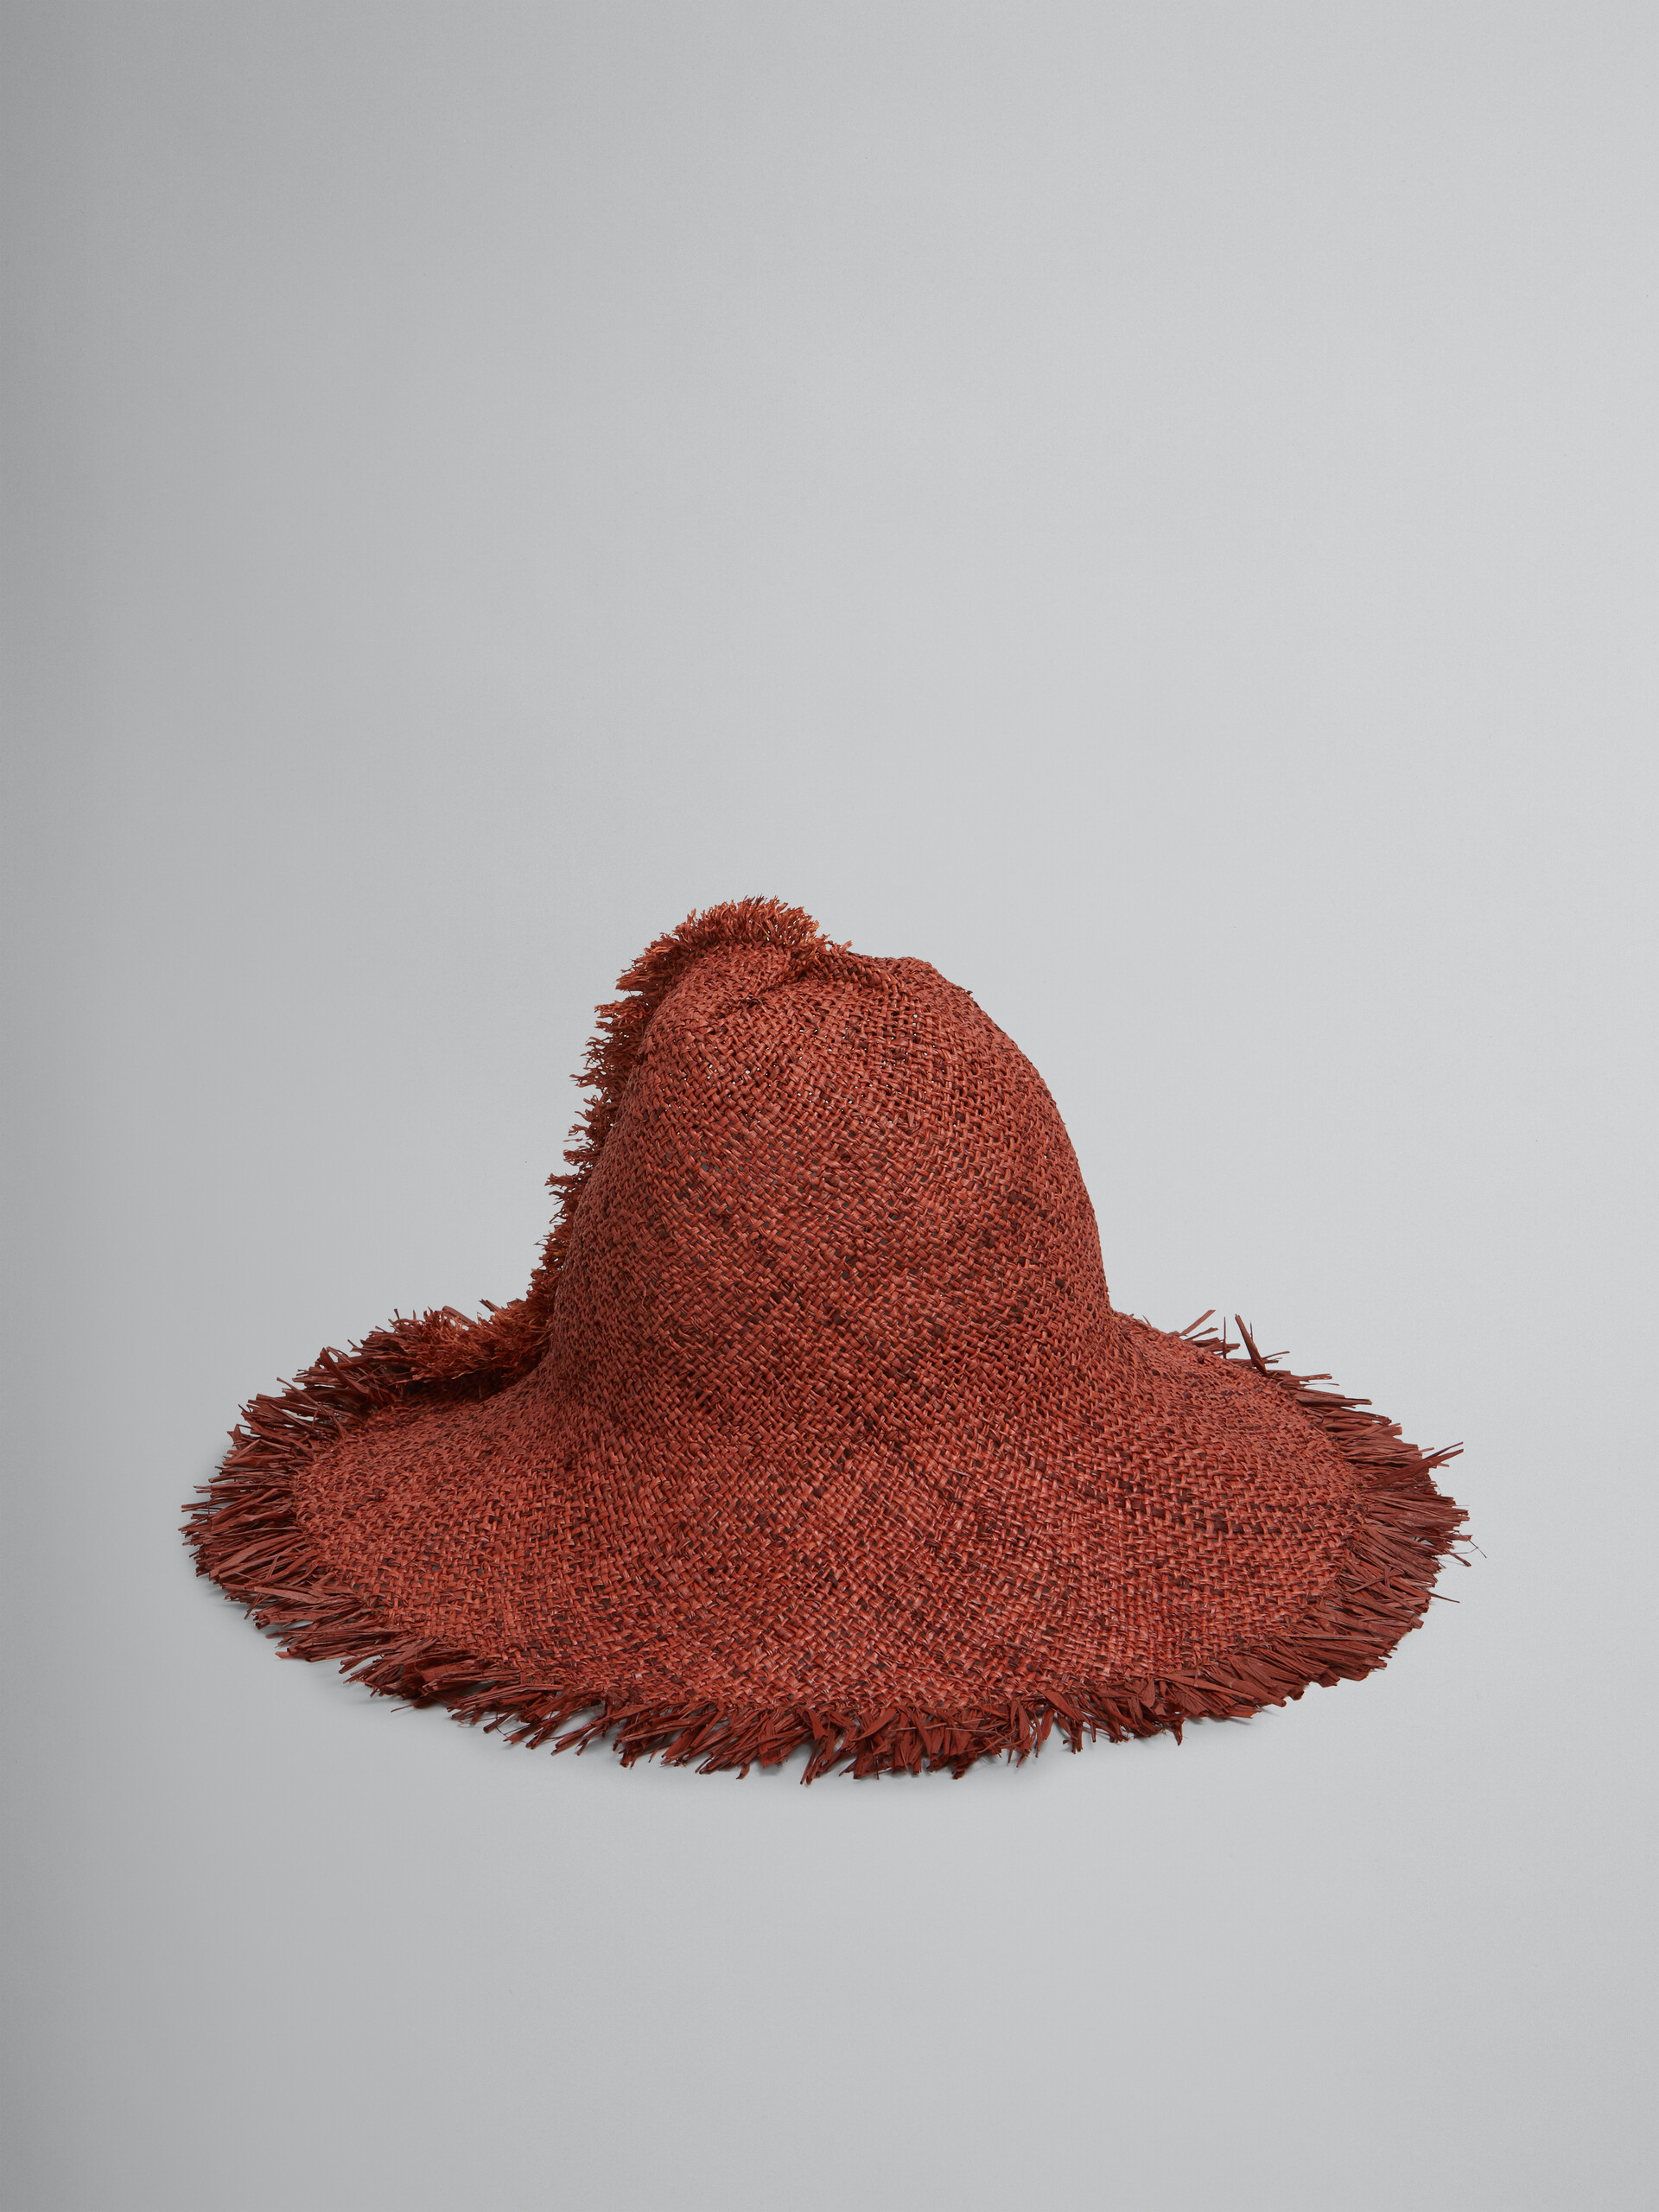 Sombrero de rafia marrón con borde deshilachado - Sombrero - Image 1